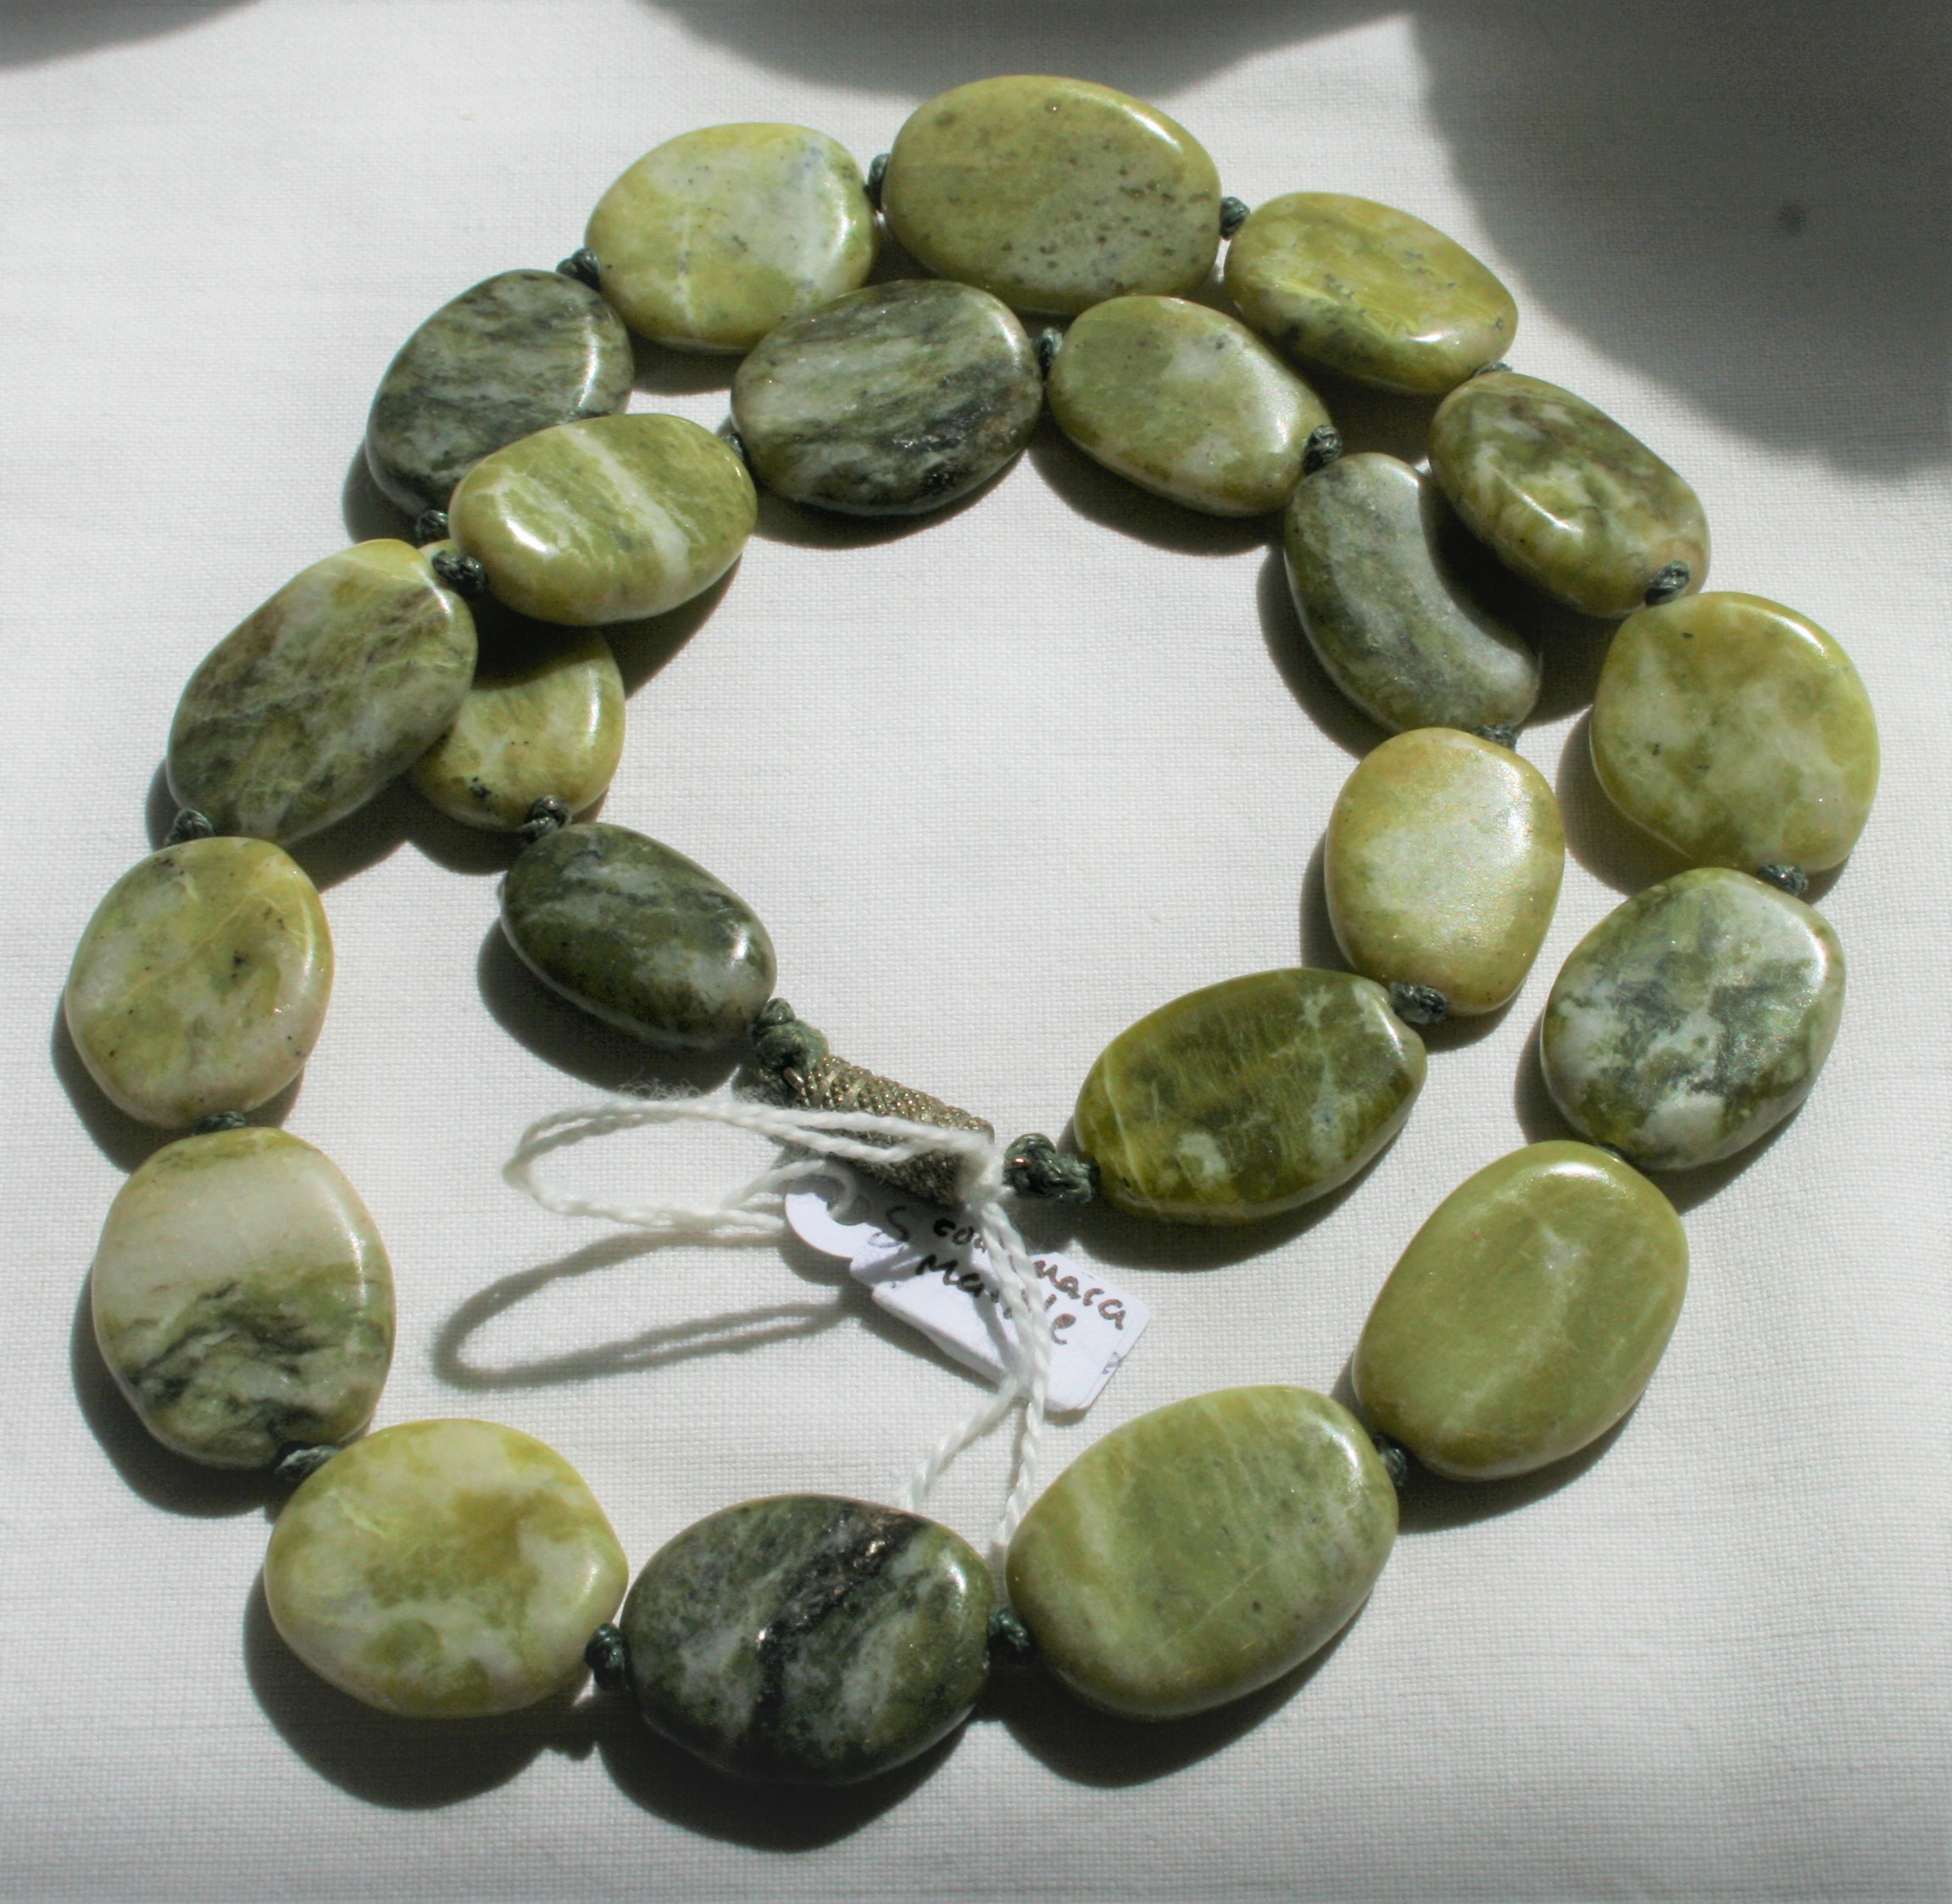 Connemara Marble necklace